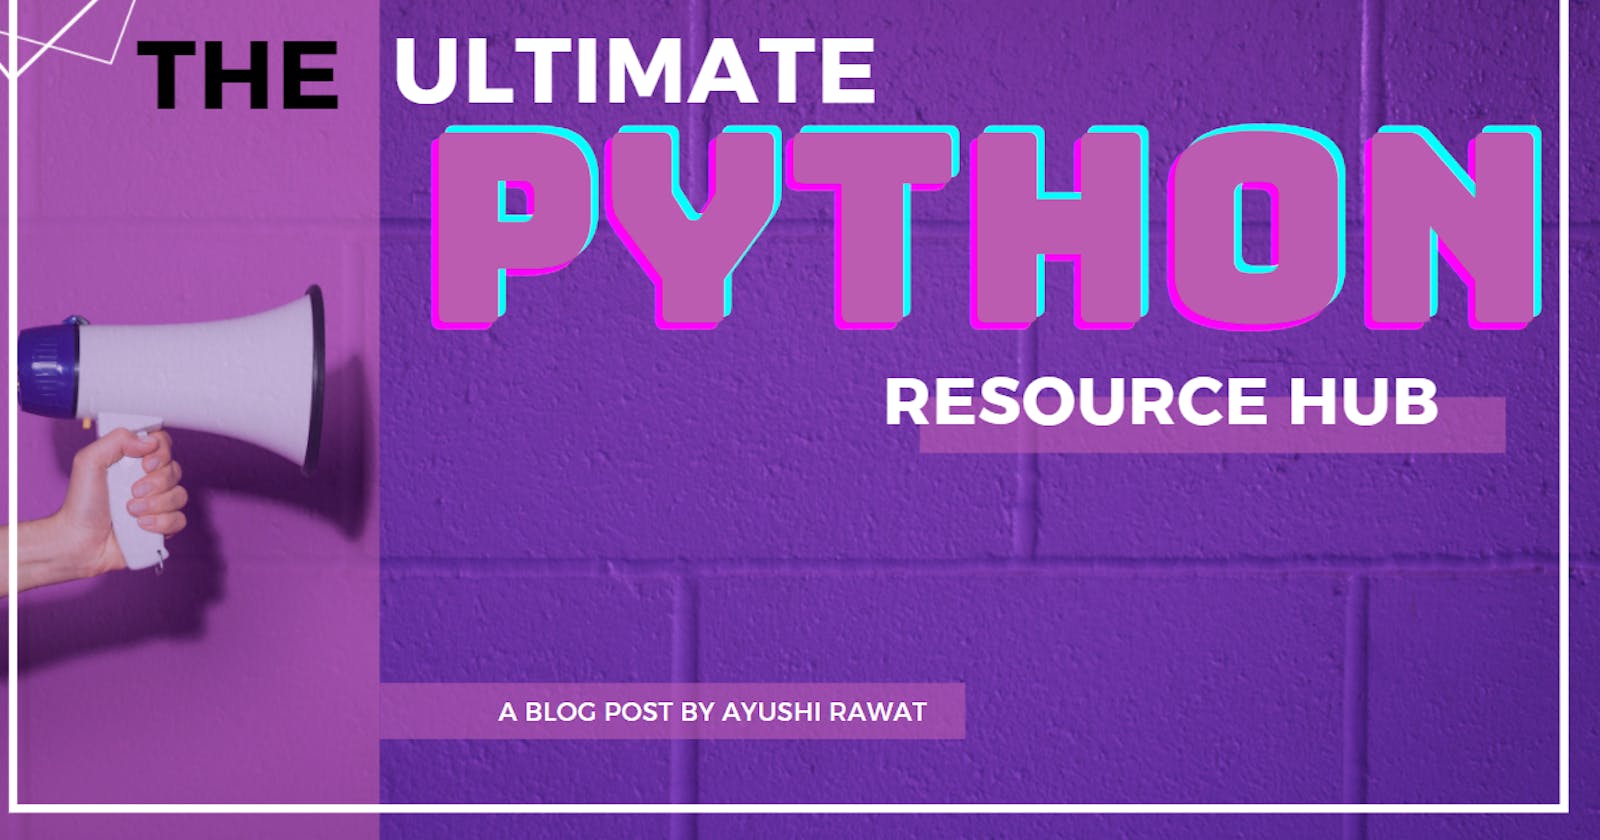 The Ultimate Python Resource hub